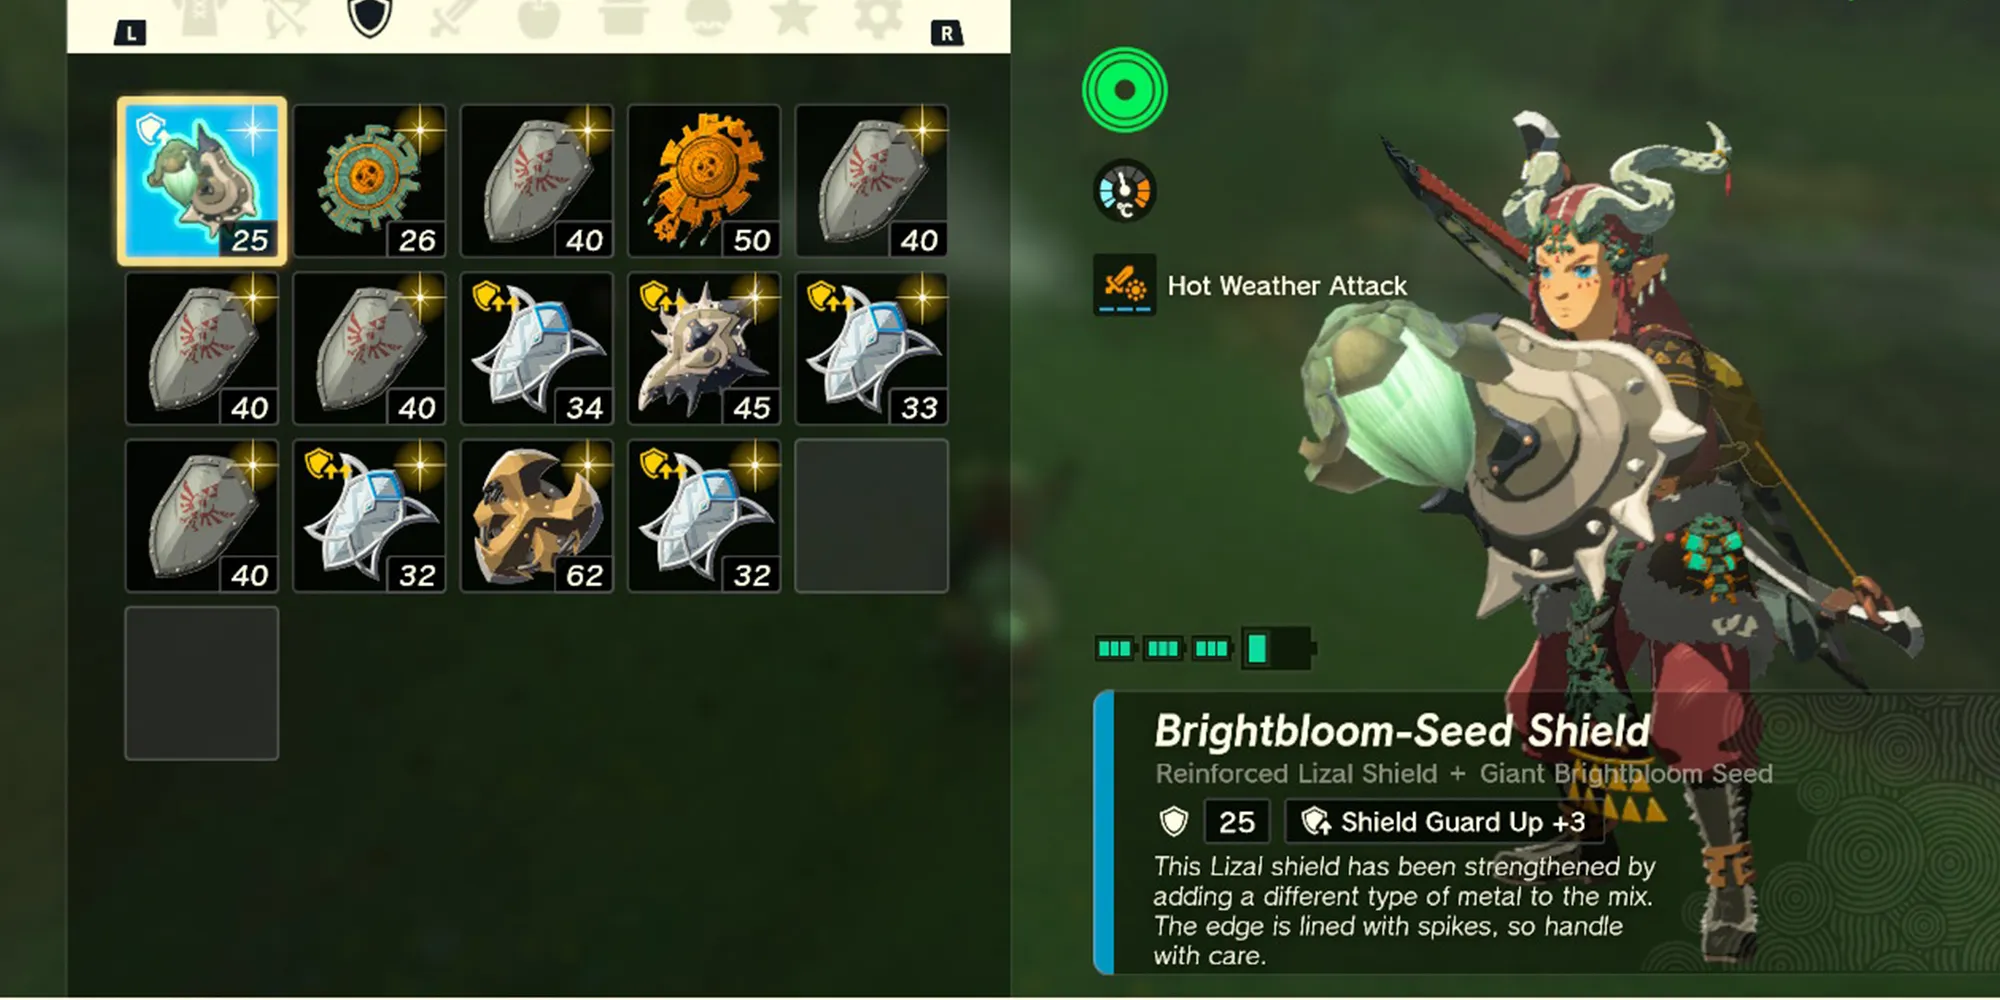 Brightbloom-Seed Shield